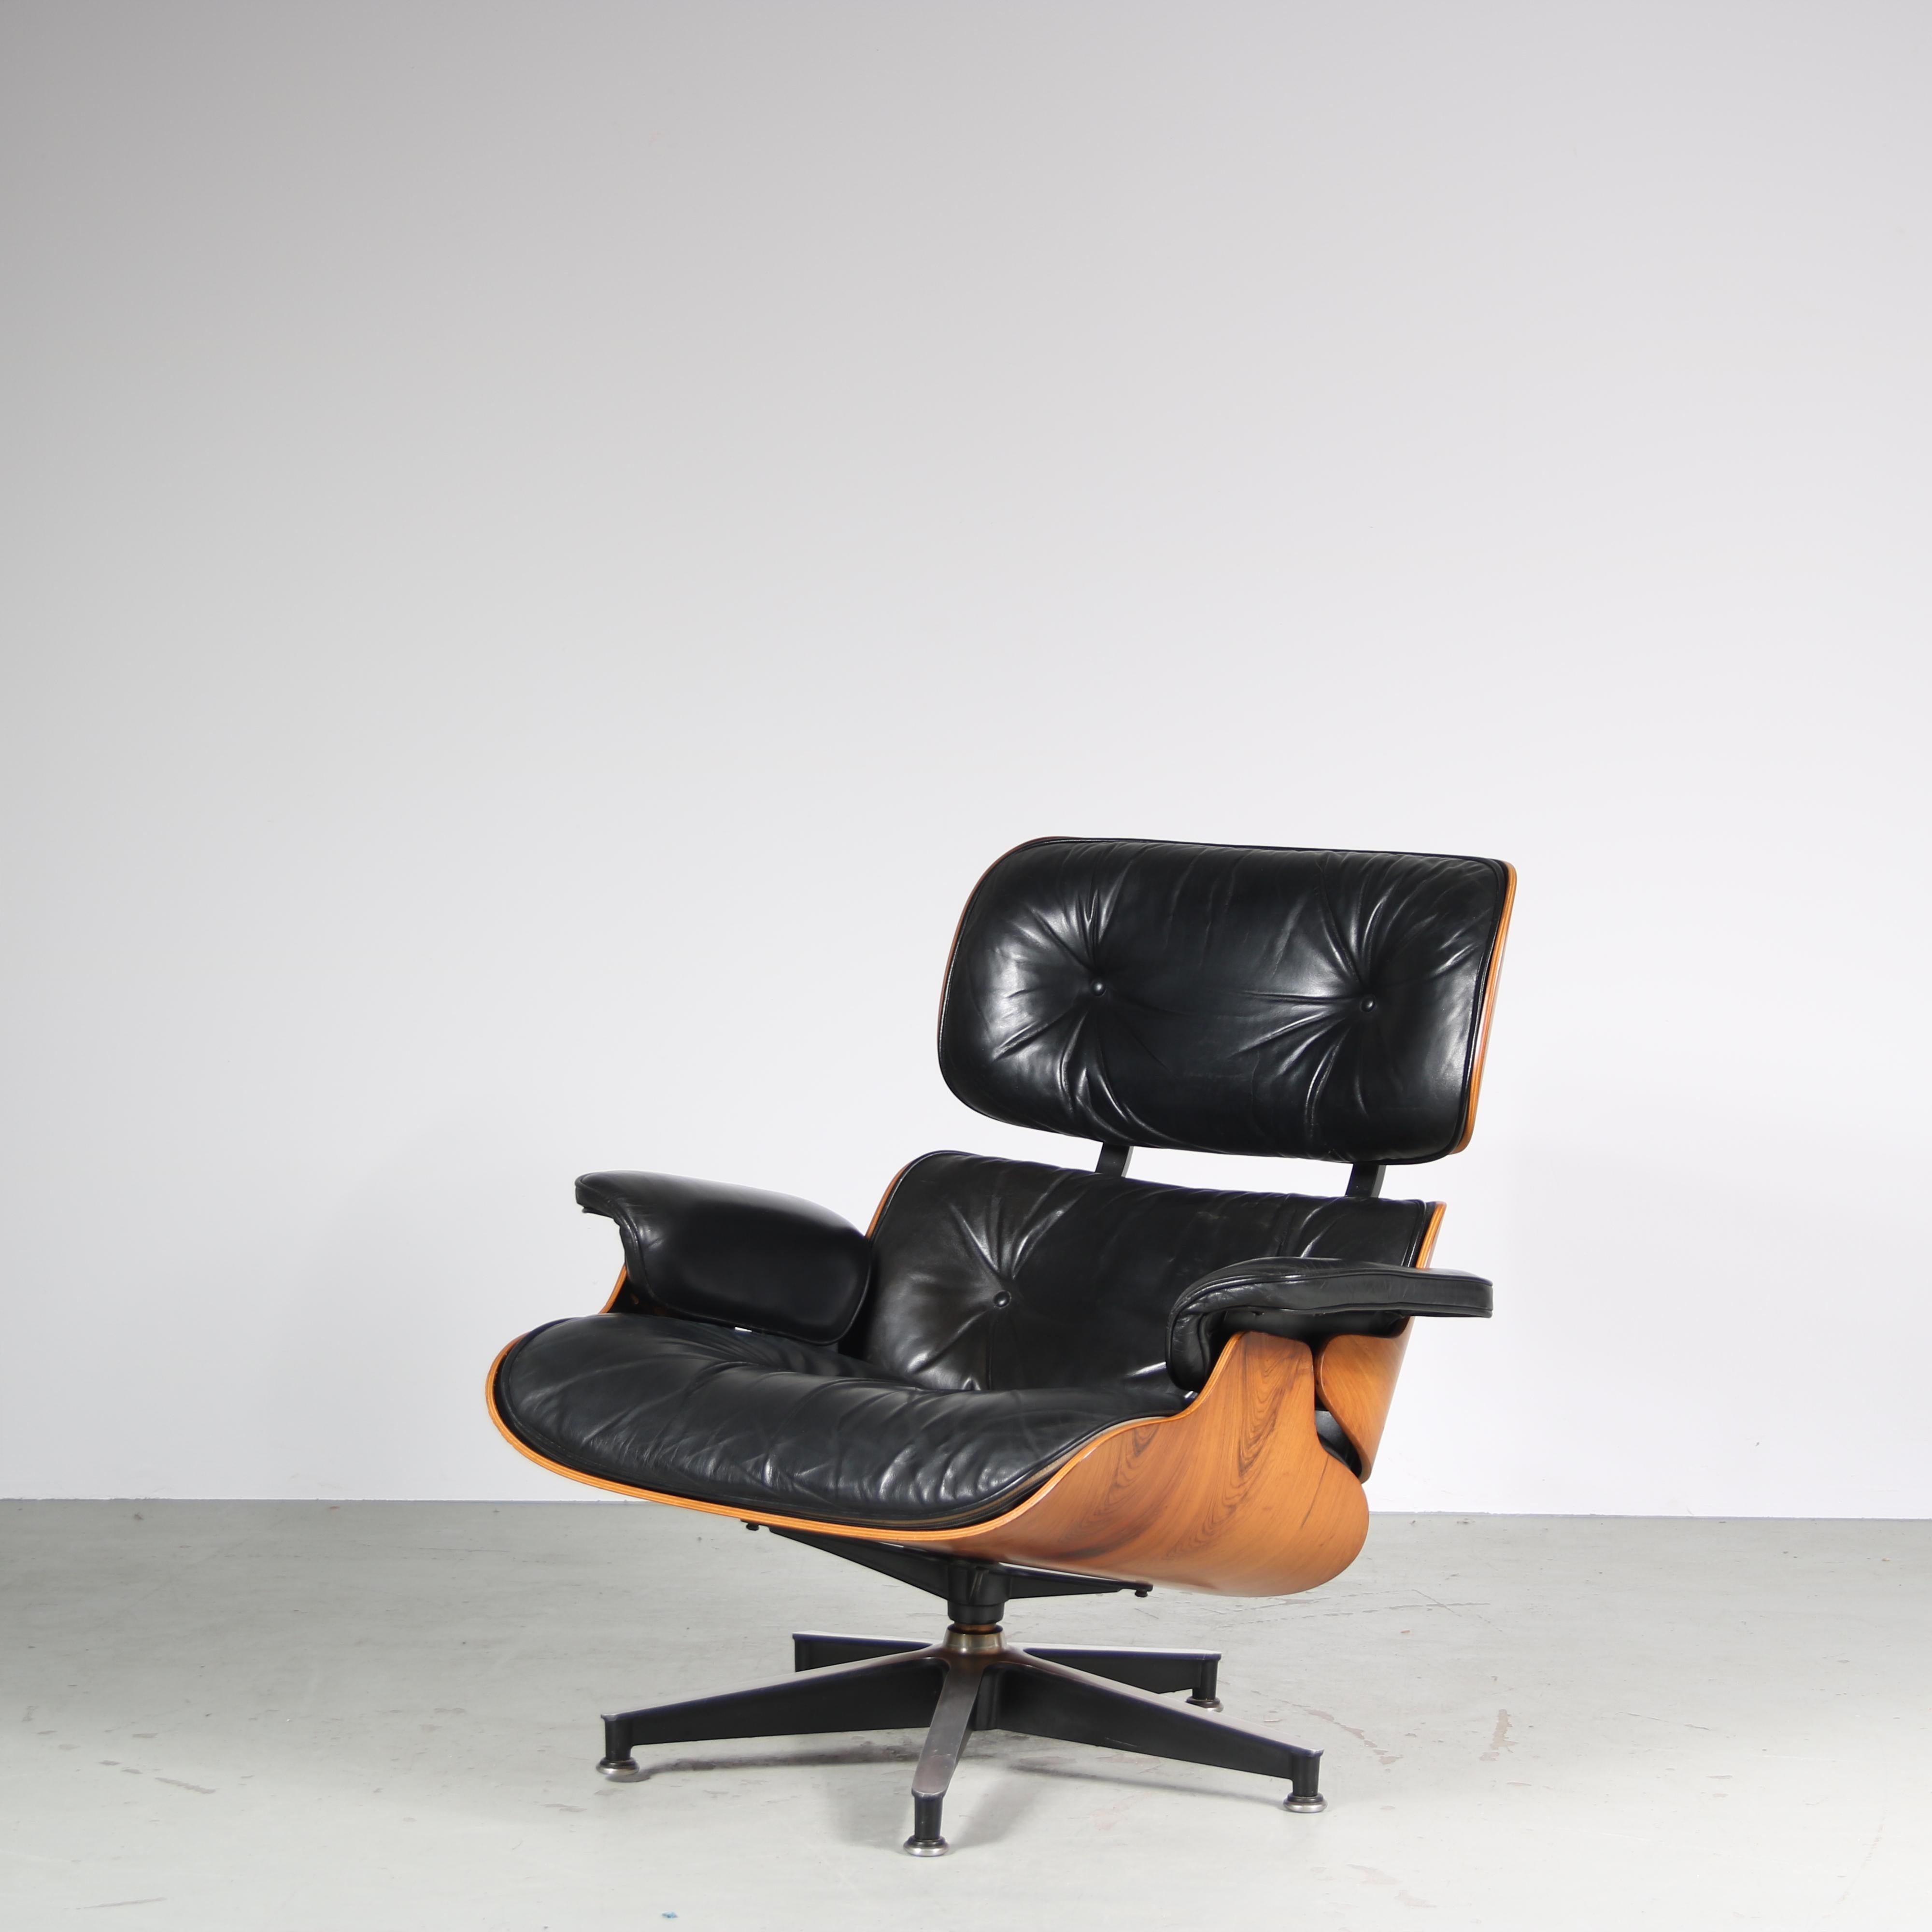 

Dieser Loungesessel wurde von Charles & Ray Eames entworfen und von Herman Miller in den Vereinigten Staaten hergestellt.

Es ist ein wahres Meisterwerk des Designs. Seine kultige, tiefbraune Schichtholzschale bietet ein unglaublich stilvolles und